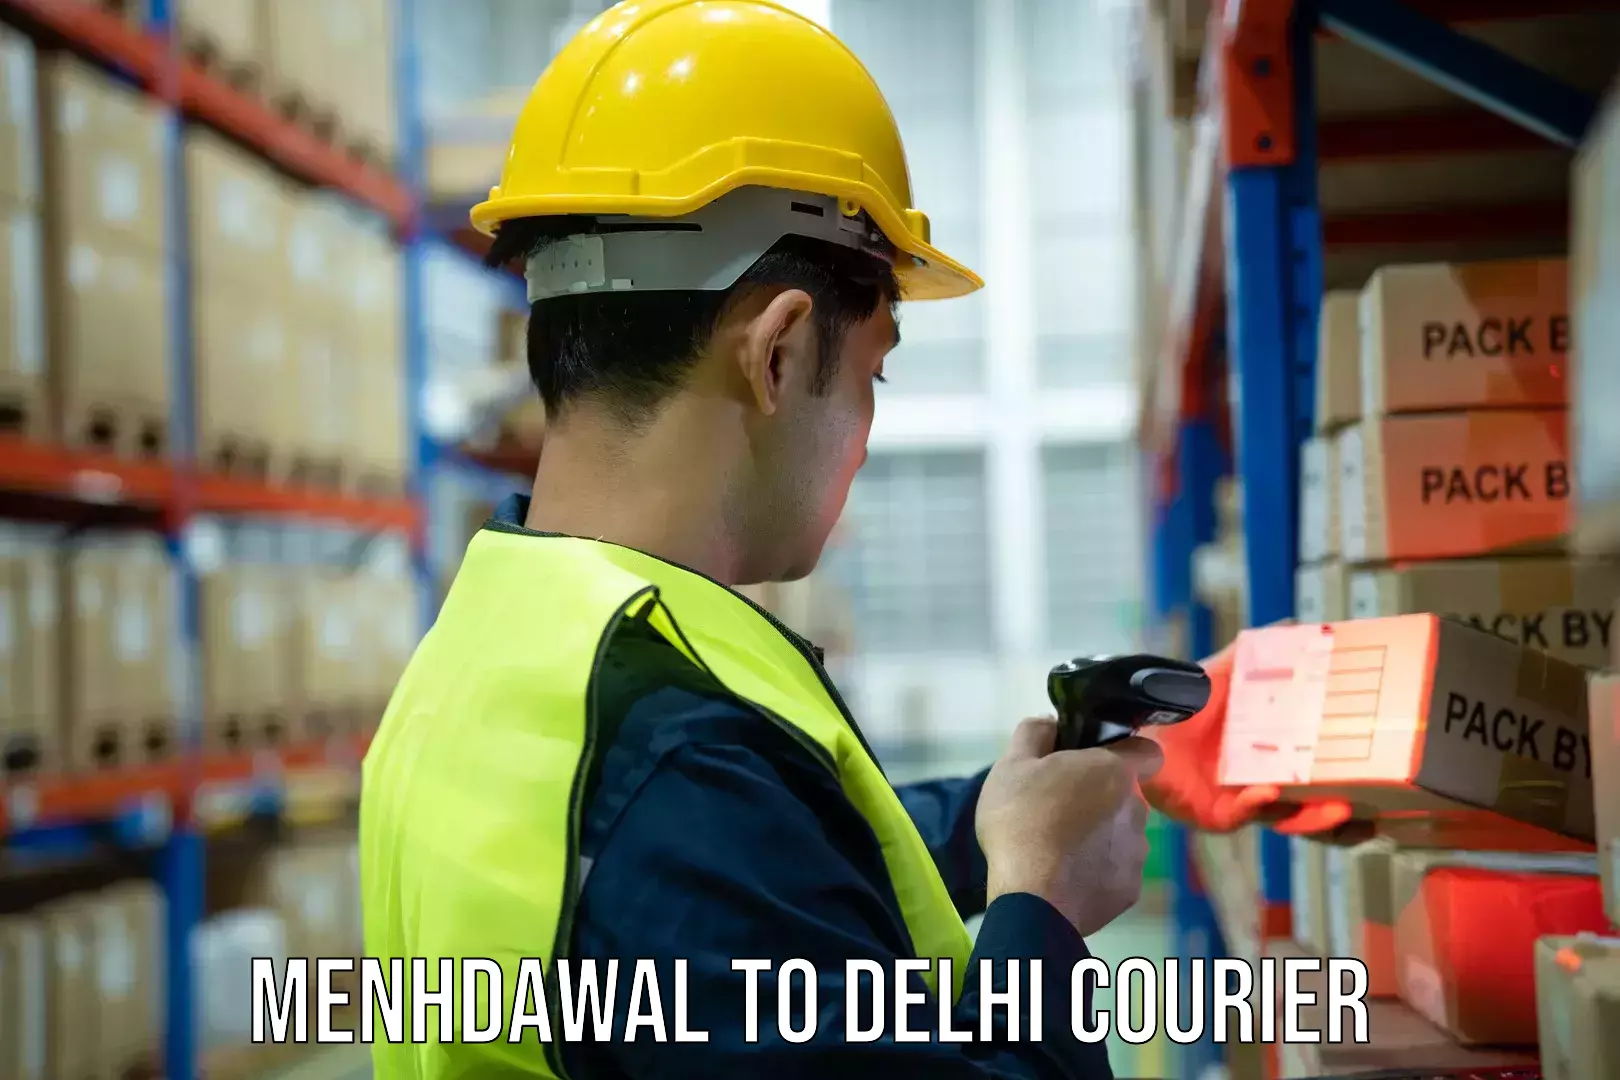 Door-to-door freight service Menhdawal to East Delhi